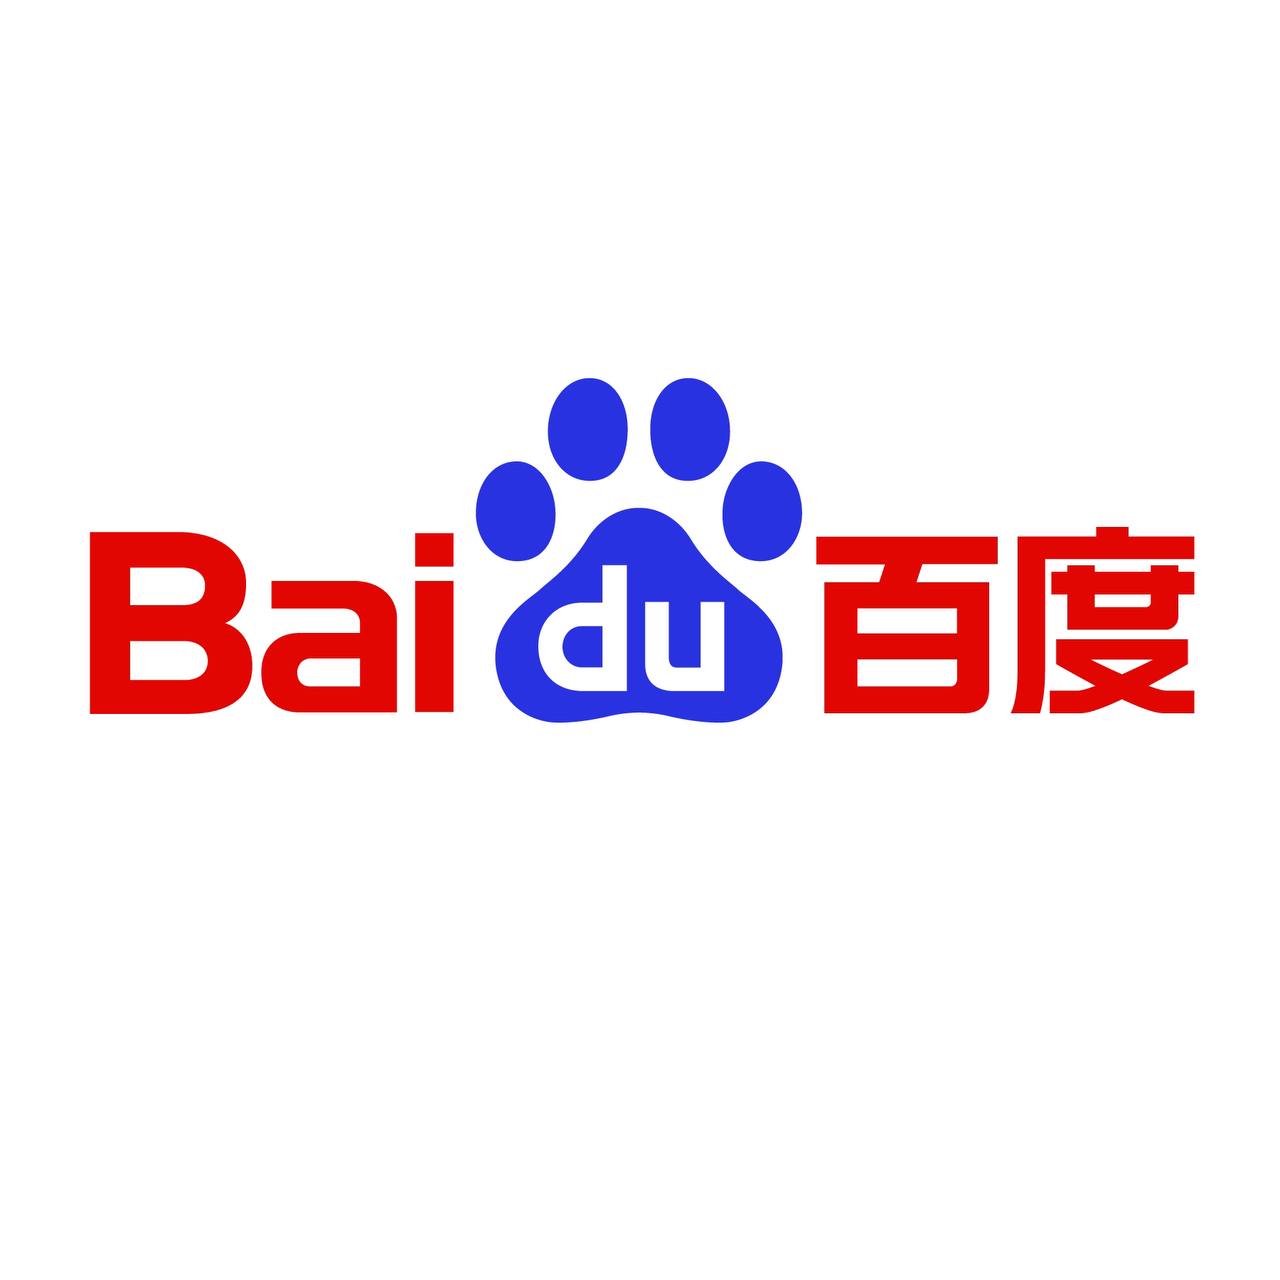 У Baidu – китайского поискового сервиса, есть свой проект ИИ-бота ERNIE bot 4.0